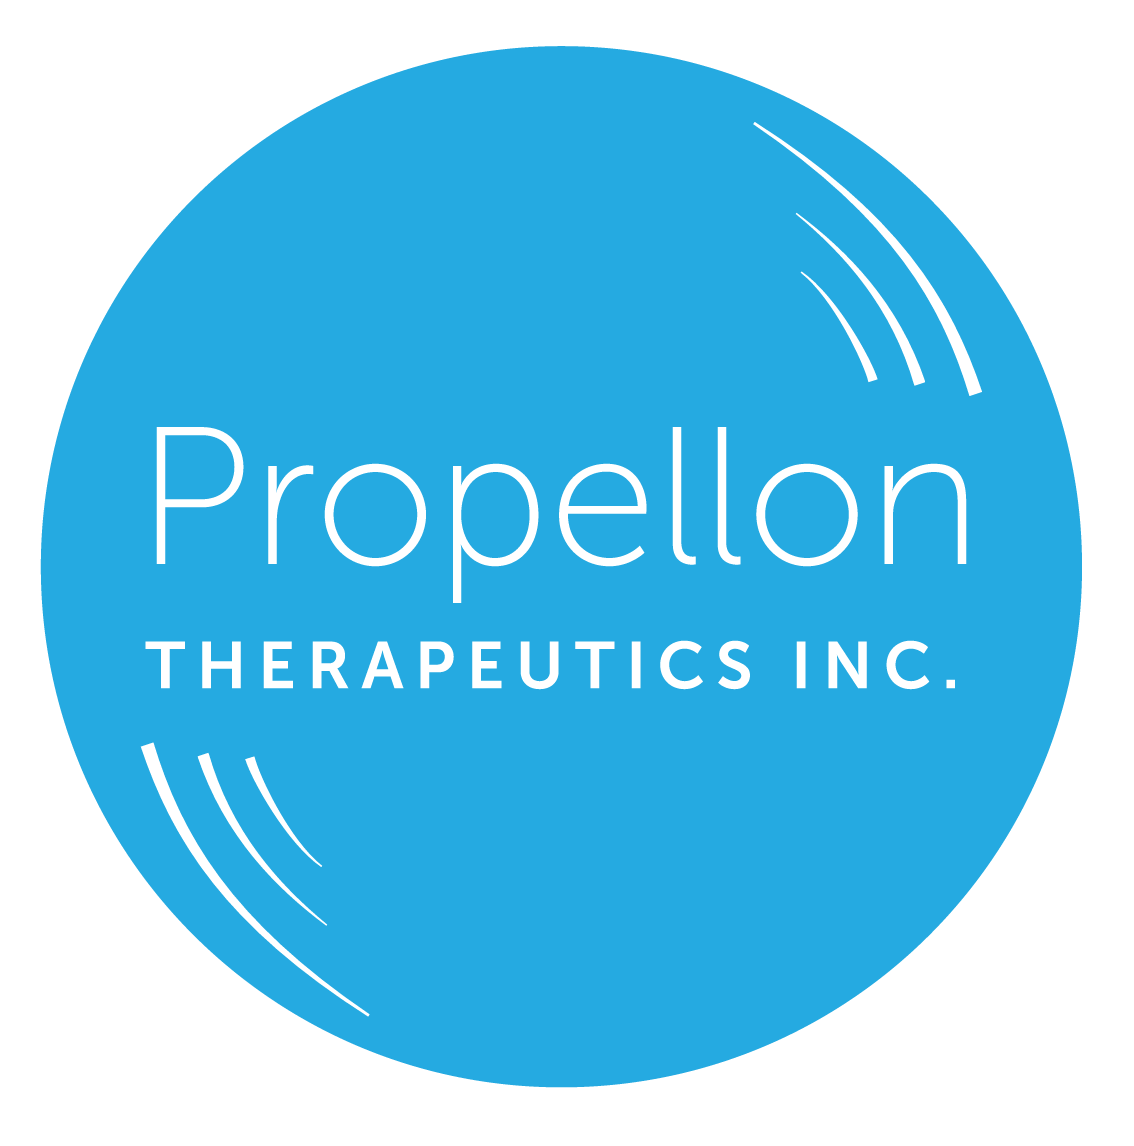 FACIT Announces Investment in Propellon Therapeutics